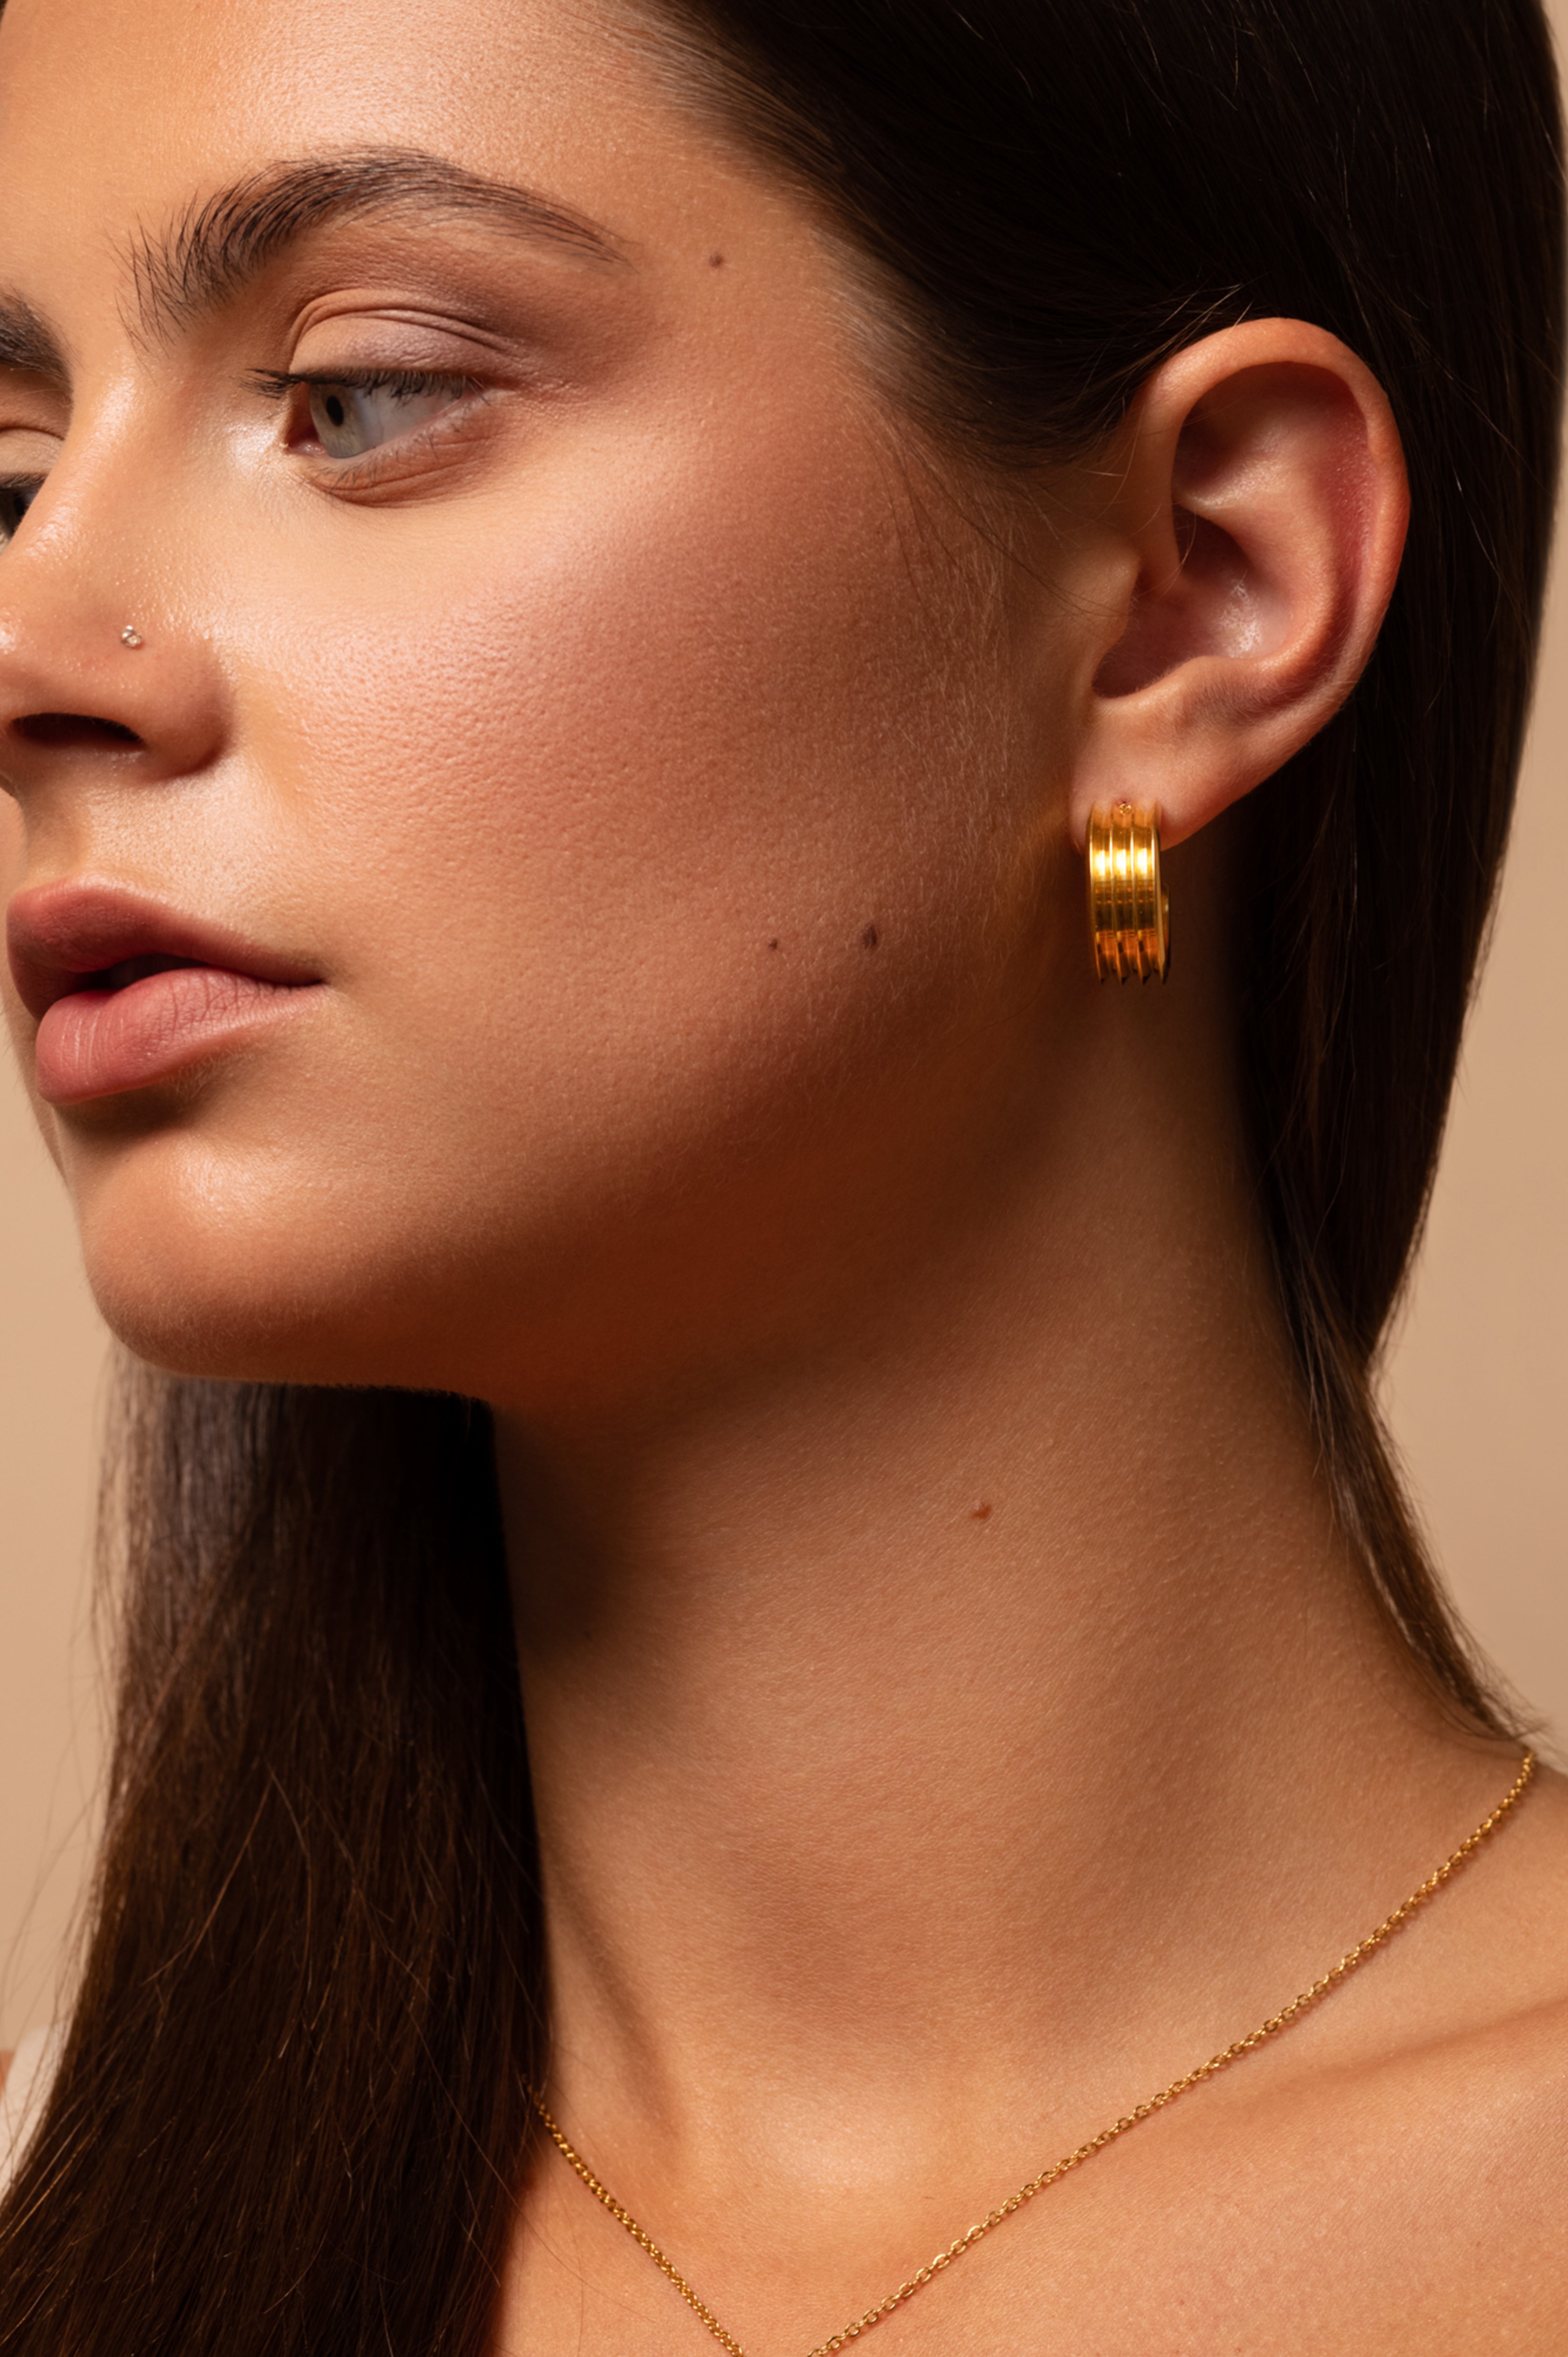 Gold-plated earrings VINTAGE HALF HOOP stainless steel